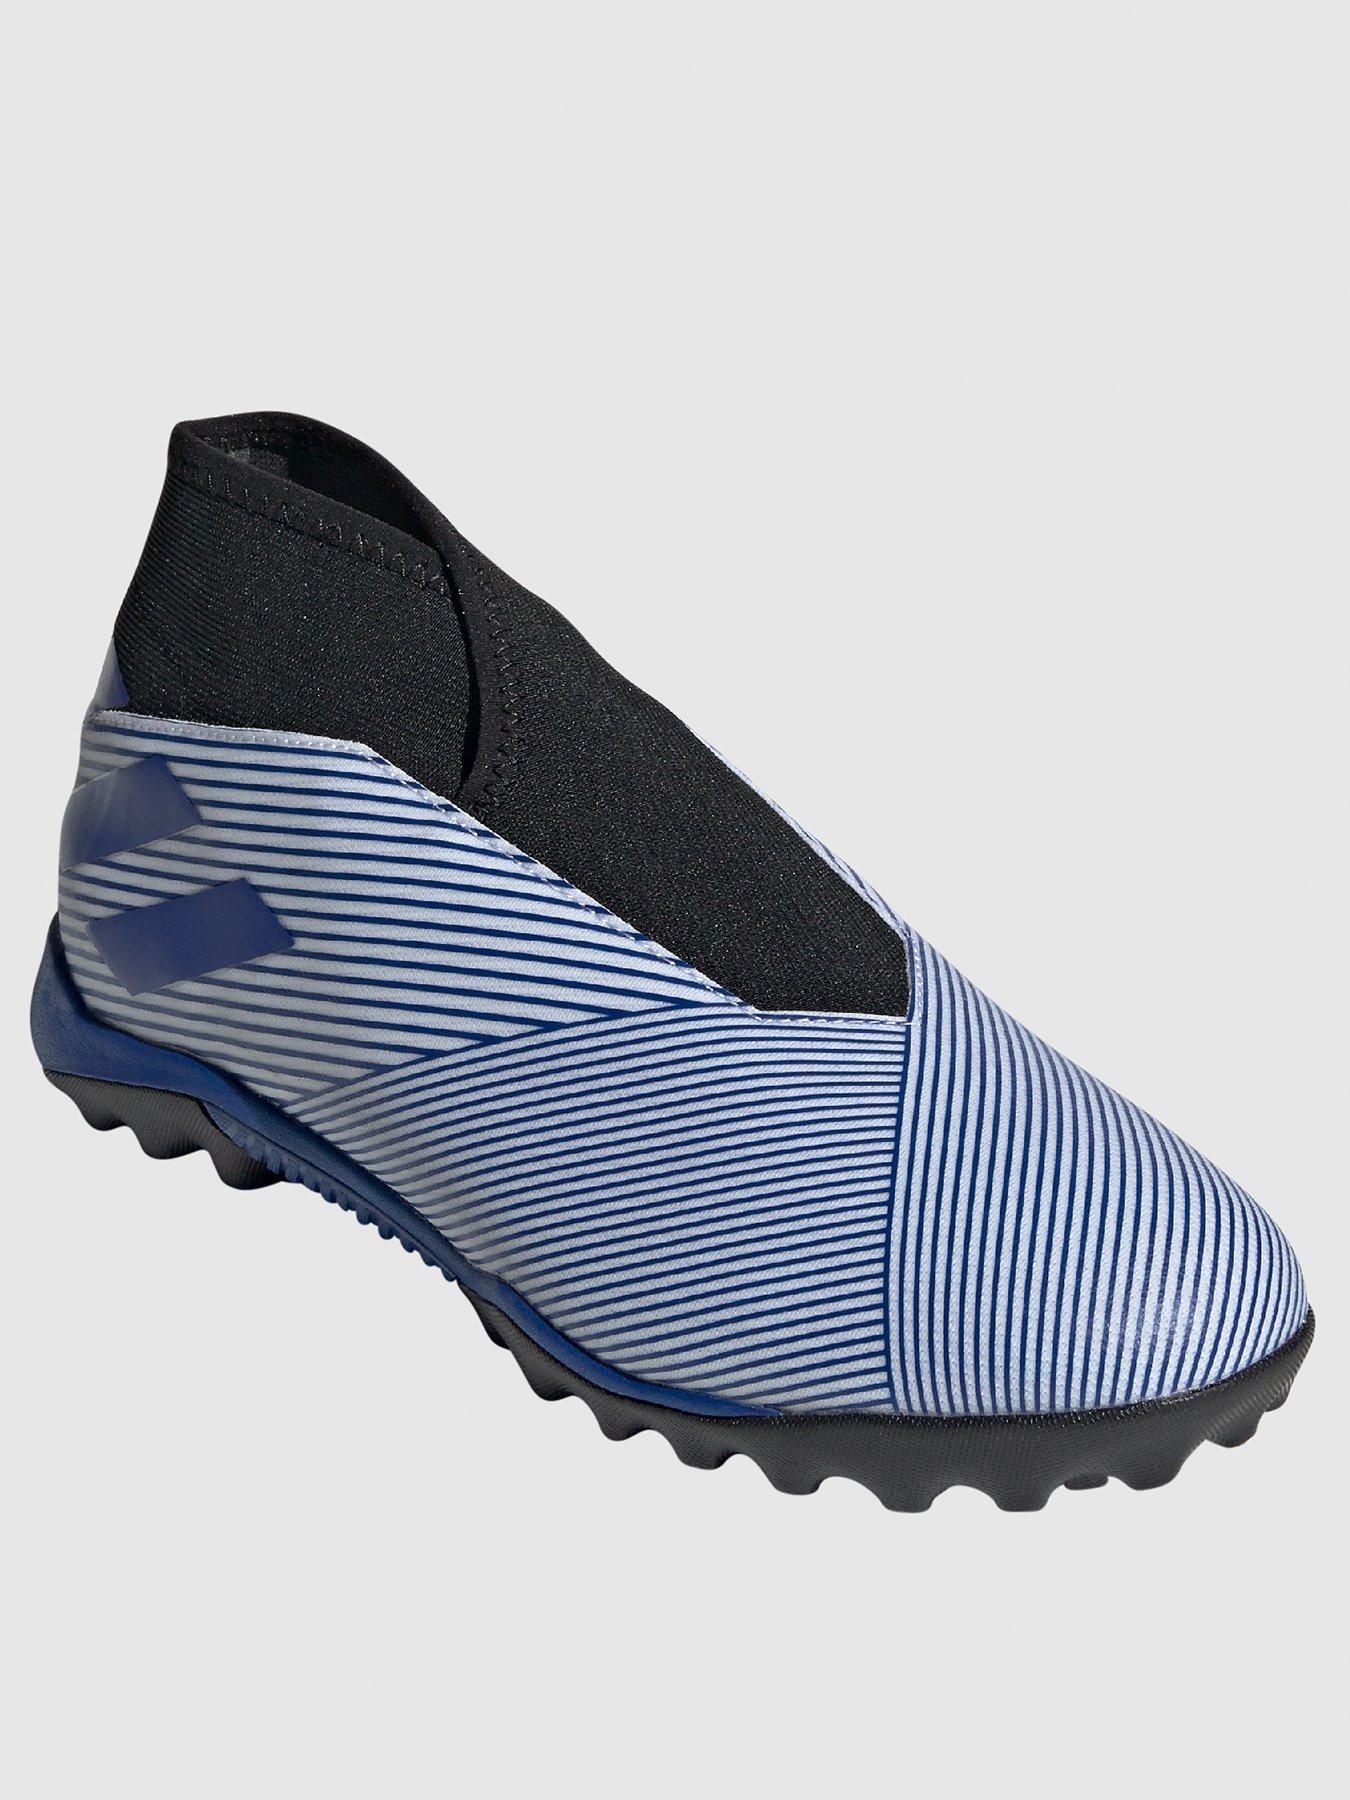 adidas astro turf sock boots